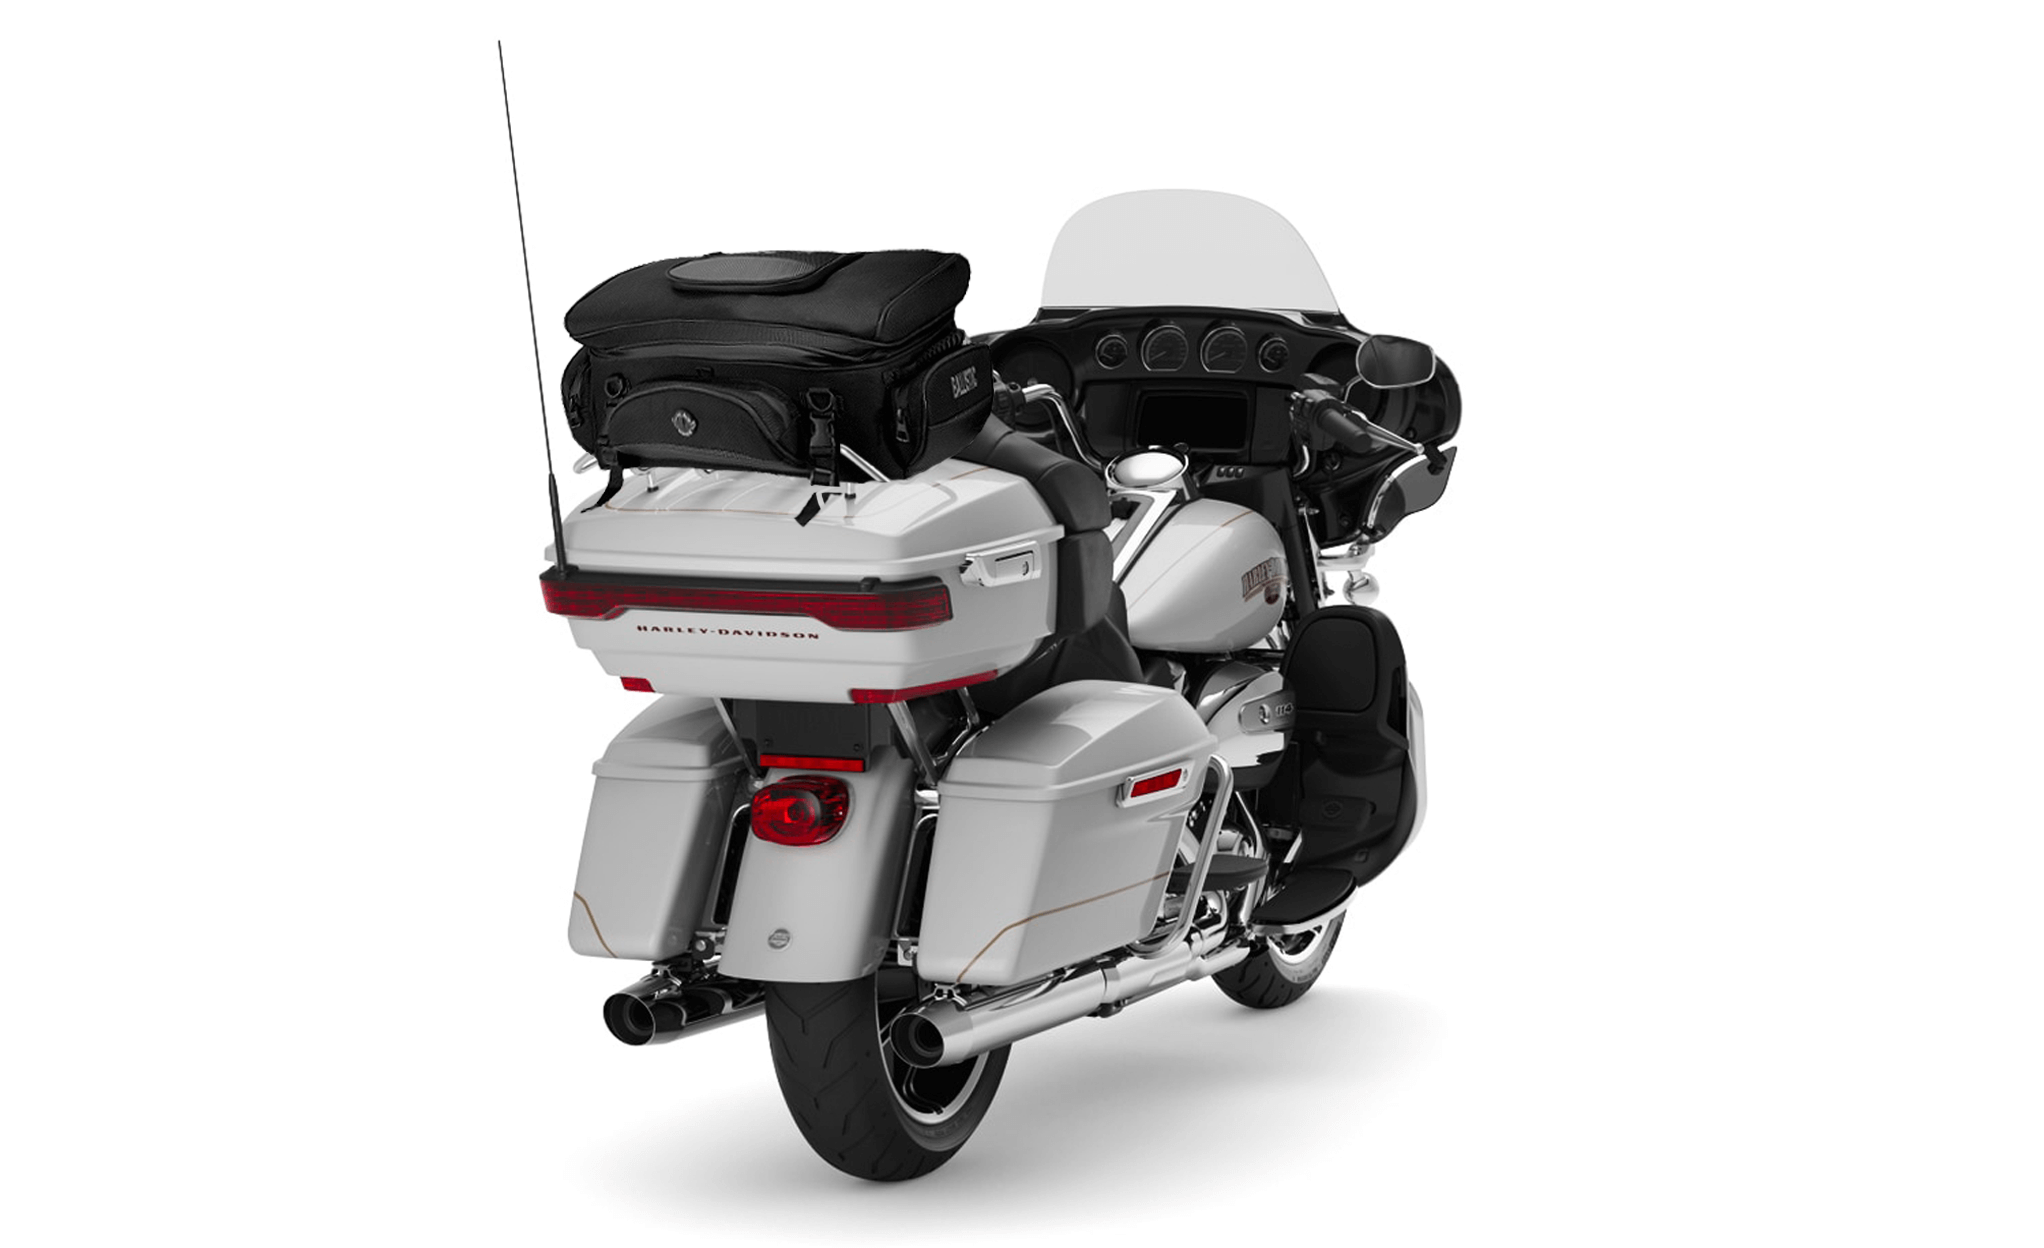 Viking Voyage Elite XL Motorcycle Sissy Bar Bag for Harley Davidson Bag on Bike View @expand